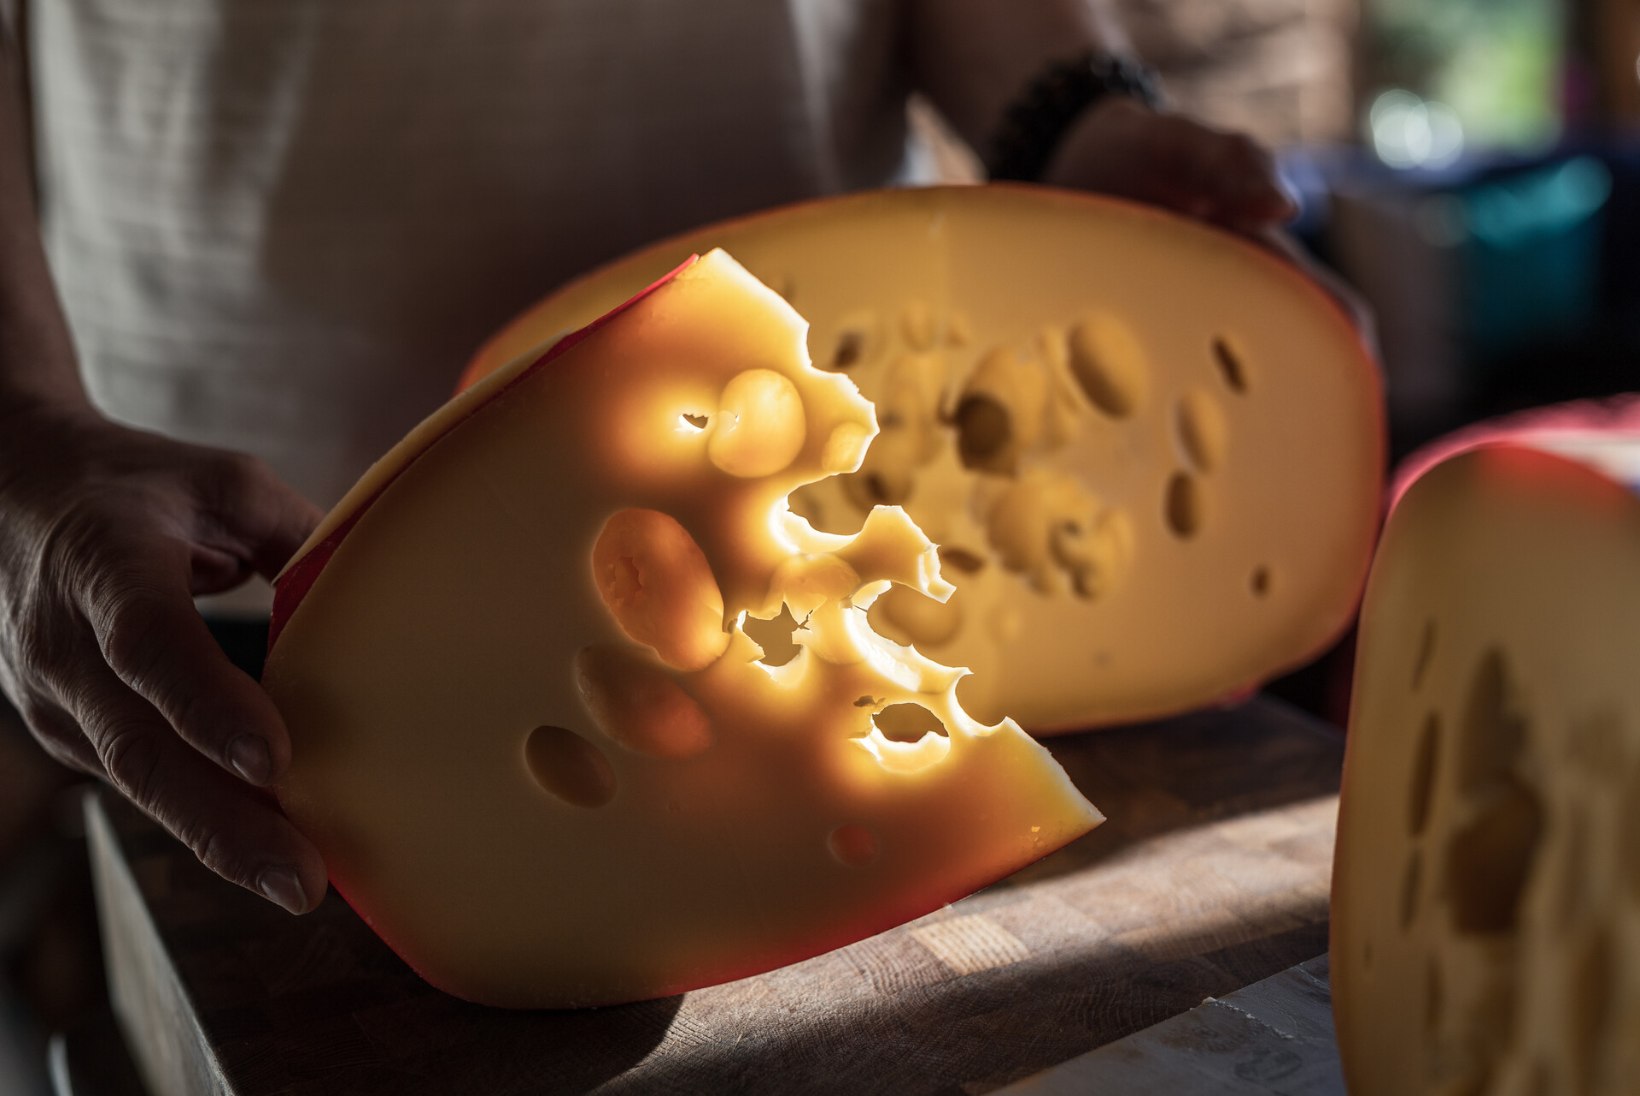 Kvaliteetne juust on hea ja maitsekas jõulukingitus – aga millist Andre Juustufarmi juustu ikkagi eelistada?